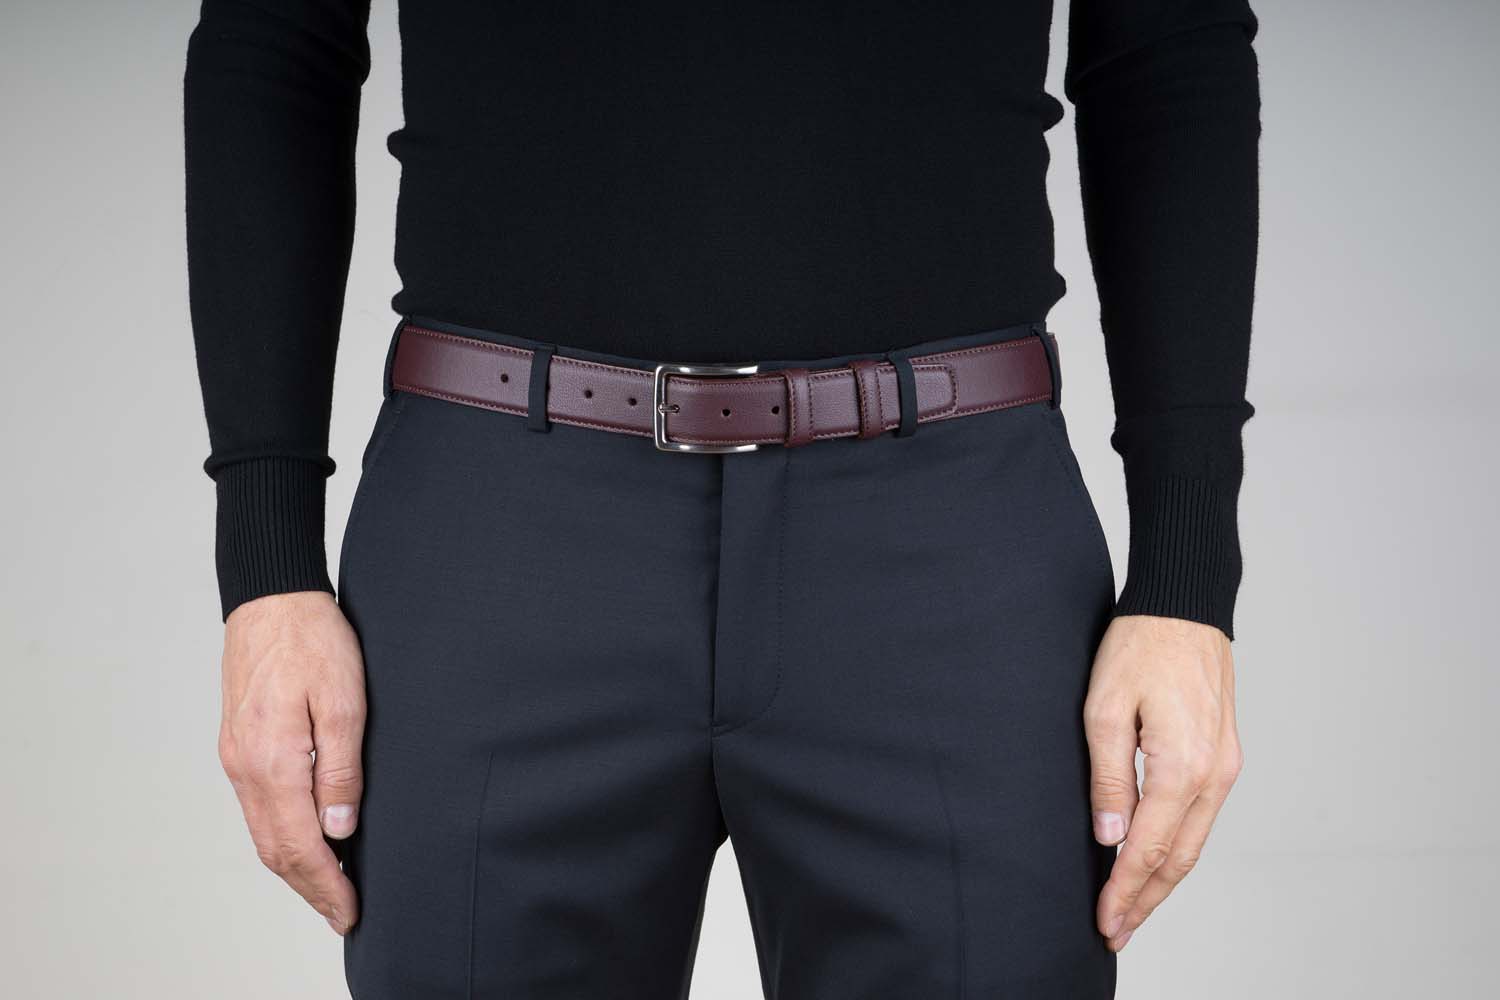 Buy Vegan Leather Burgundy Belt For Men 